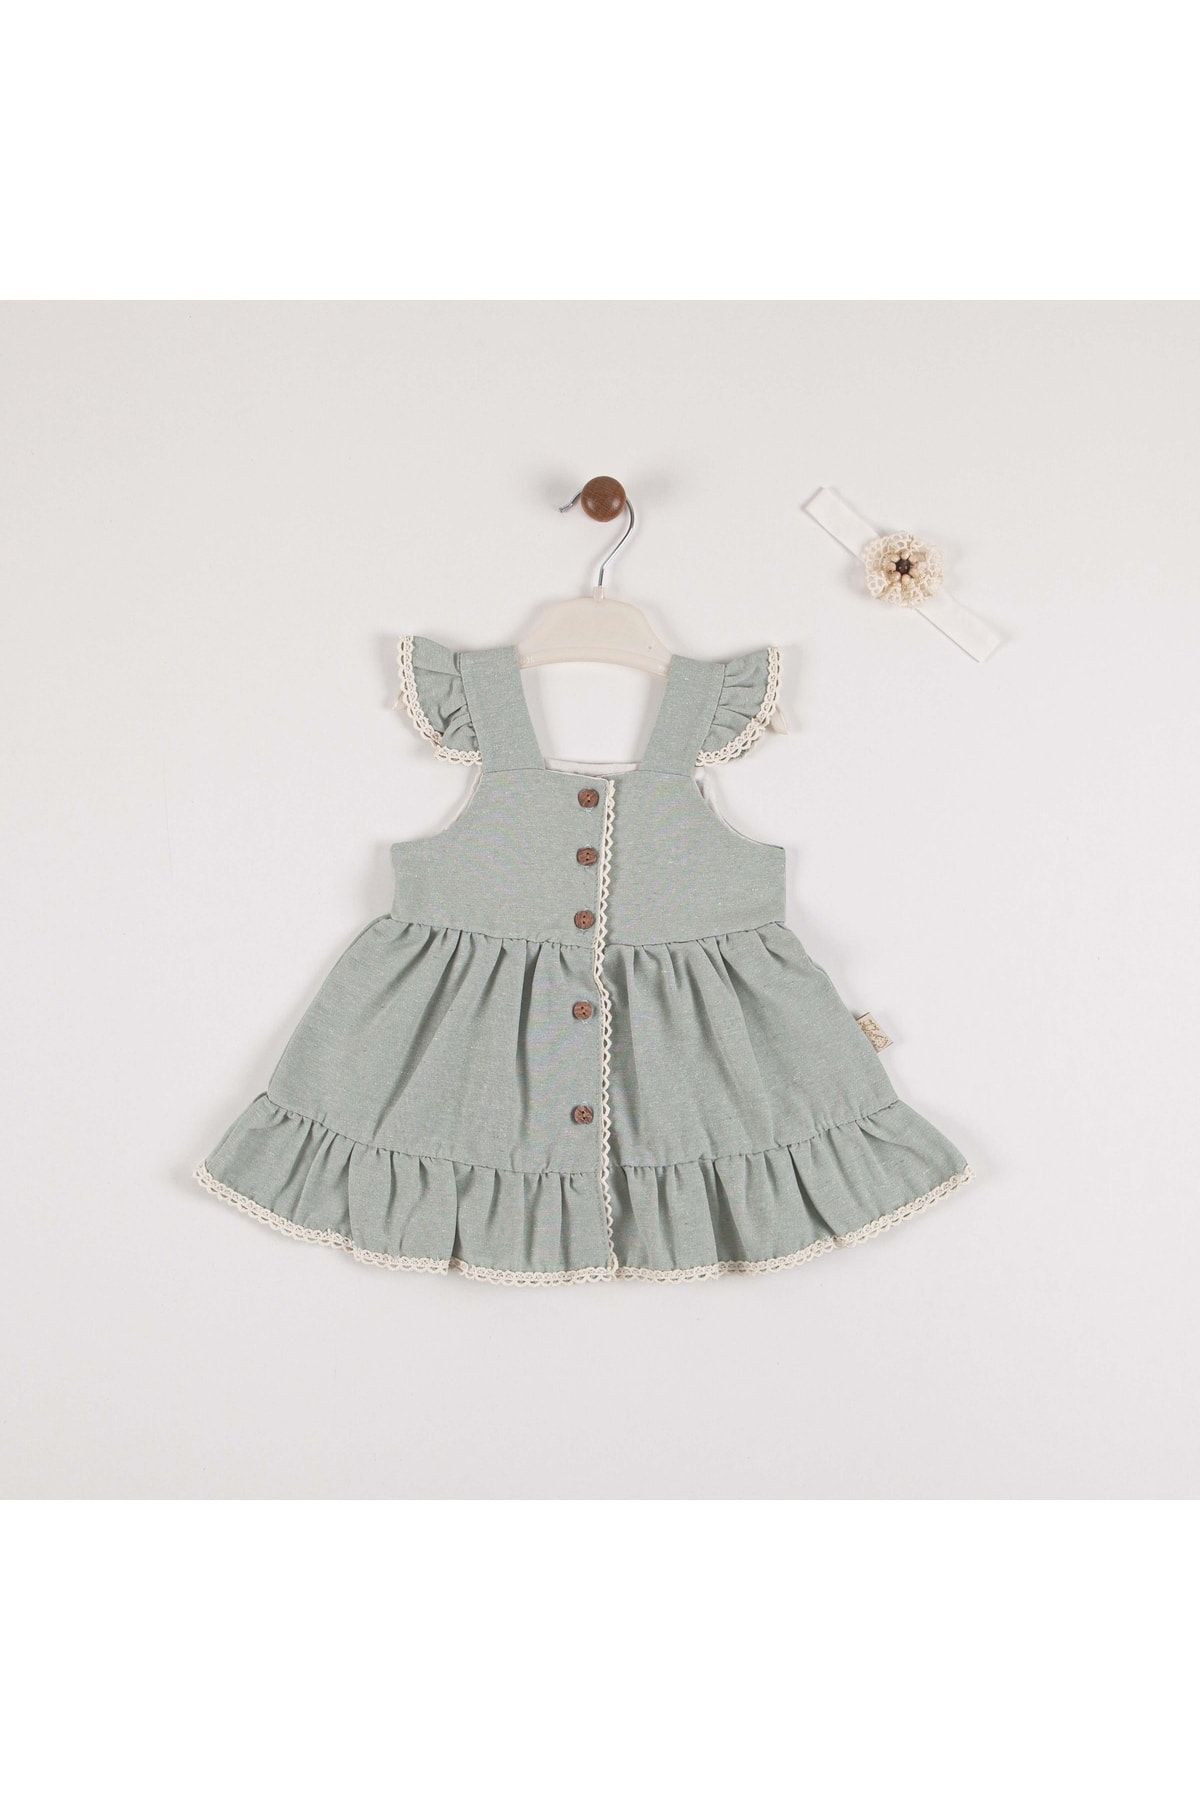 MİNİKO KİDS Kız Bebek Önden Düğmeli Askılı Pamuk Elbise